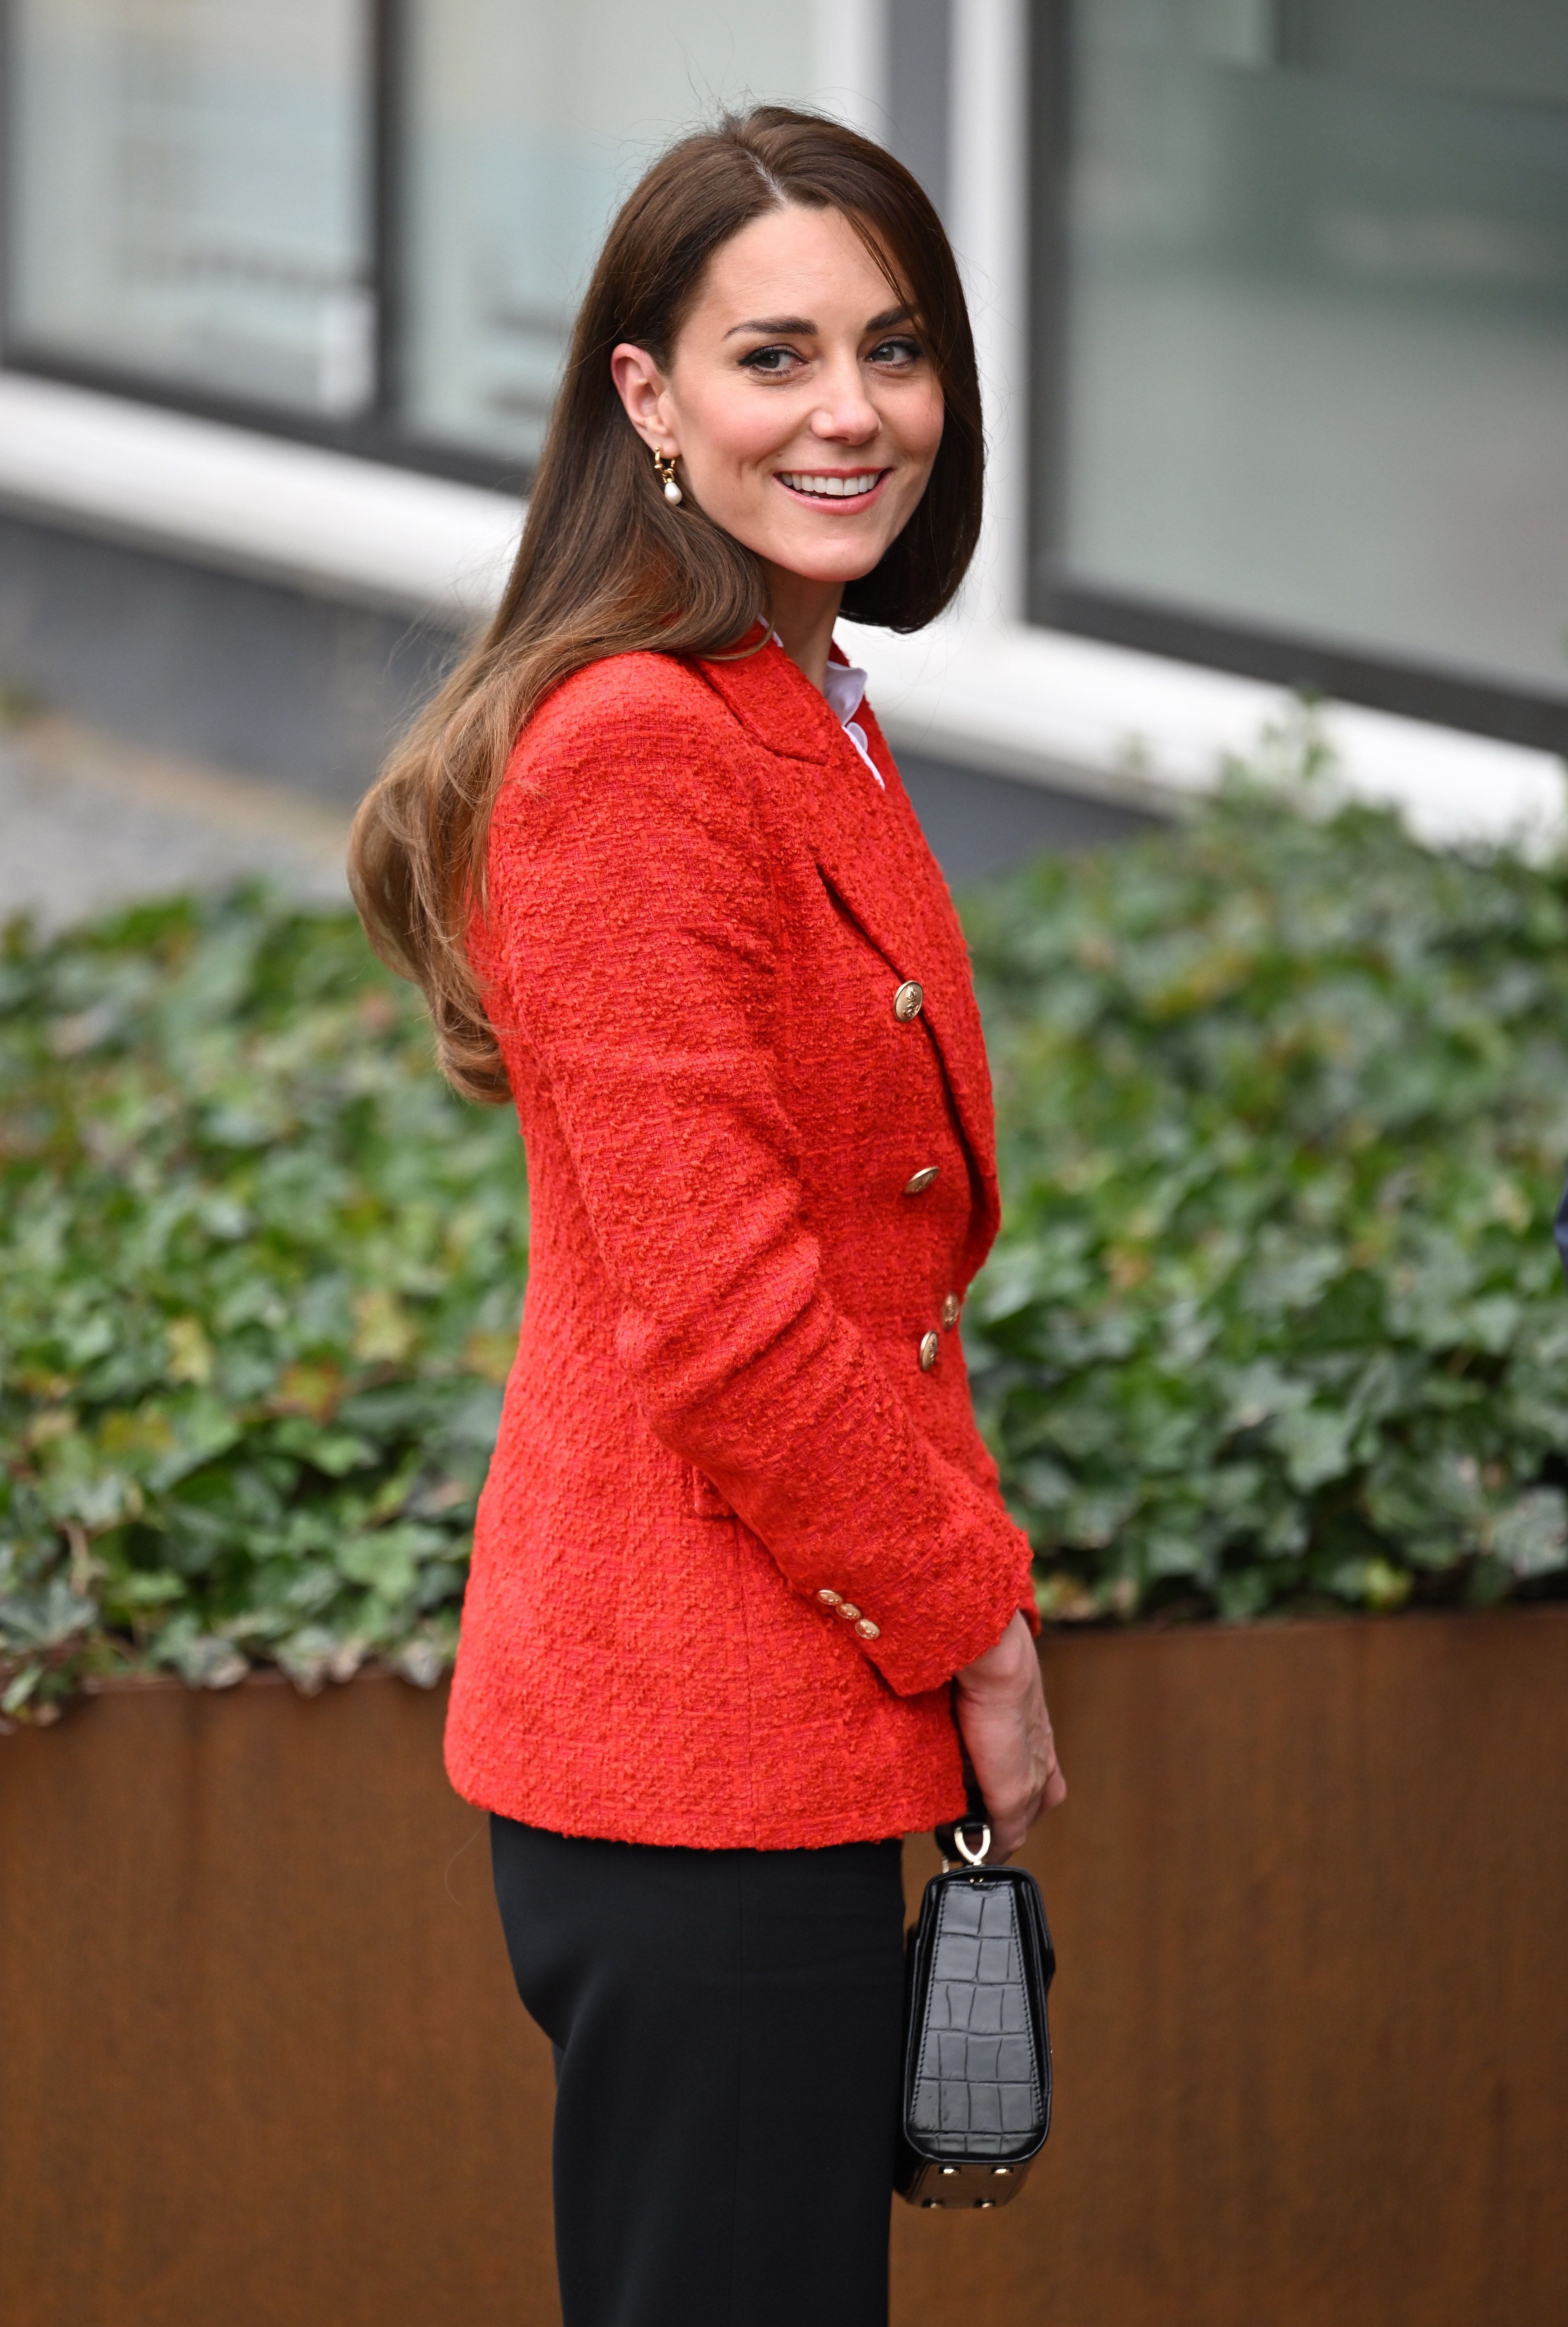 dichtheid Sitcom grootmoeder Kate Middleton draagt een rode blazer van Zara in Kopenhagen